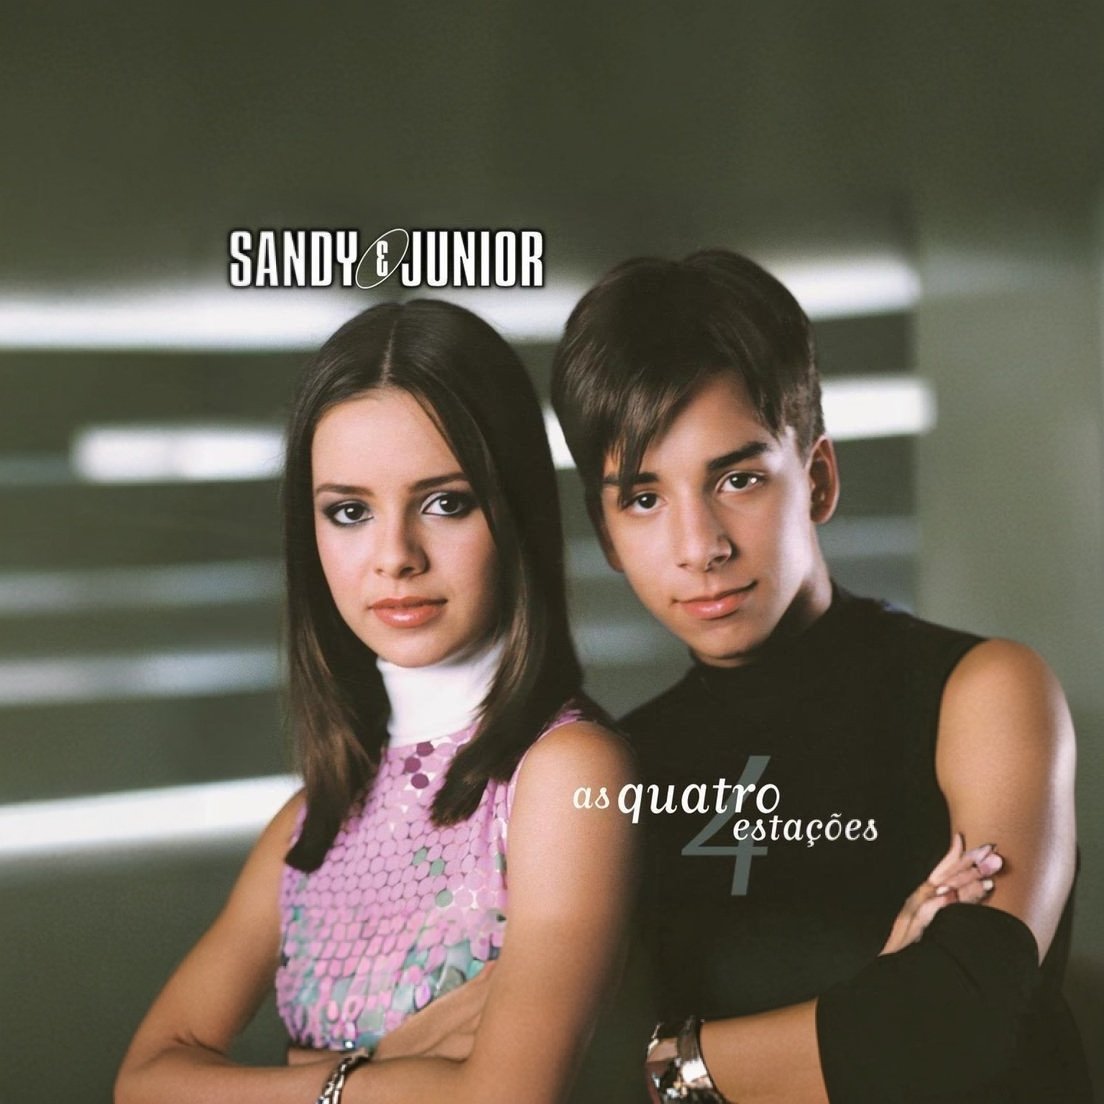 Eu expandi a capa do álbum #asquatroestacoes de #SANDYEJUNIOR eu adorei 
#sandy